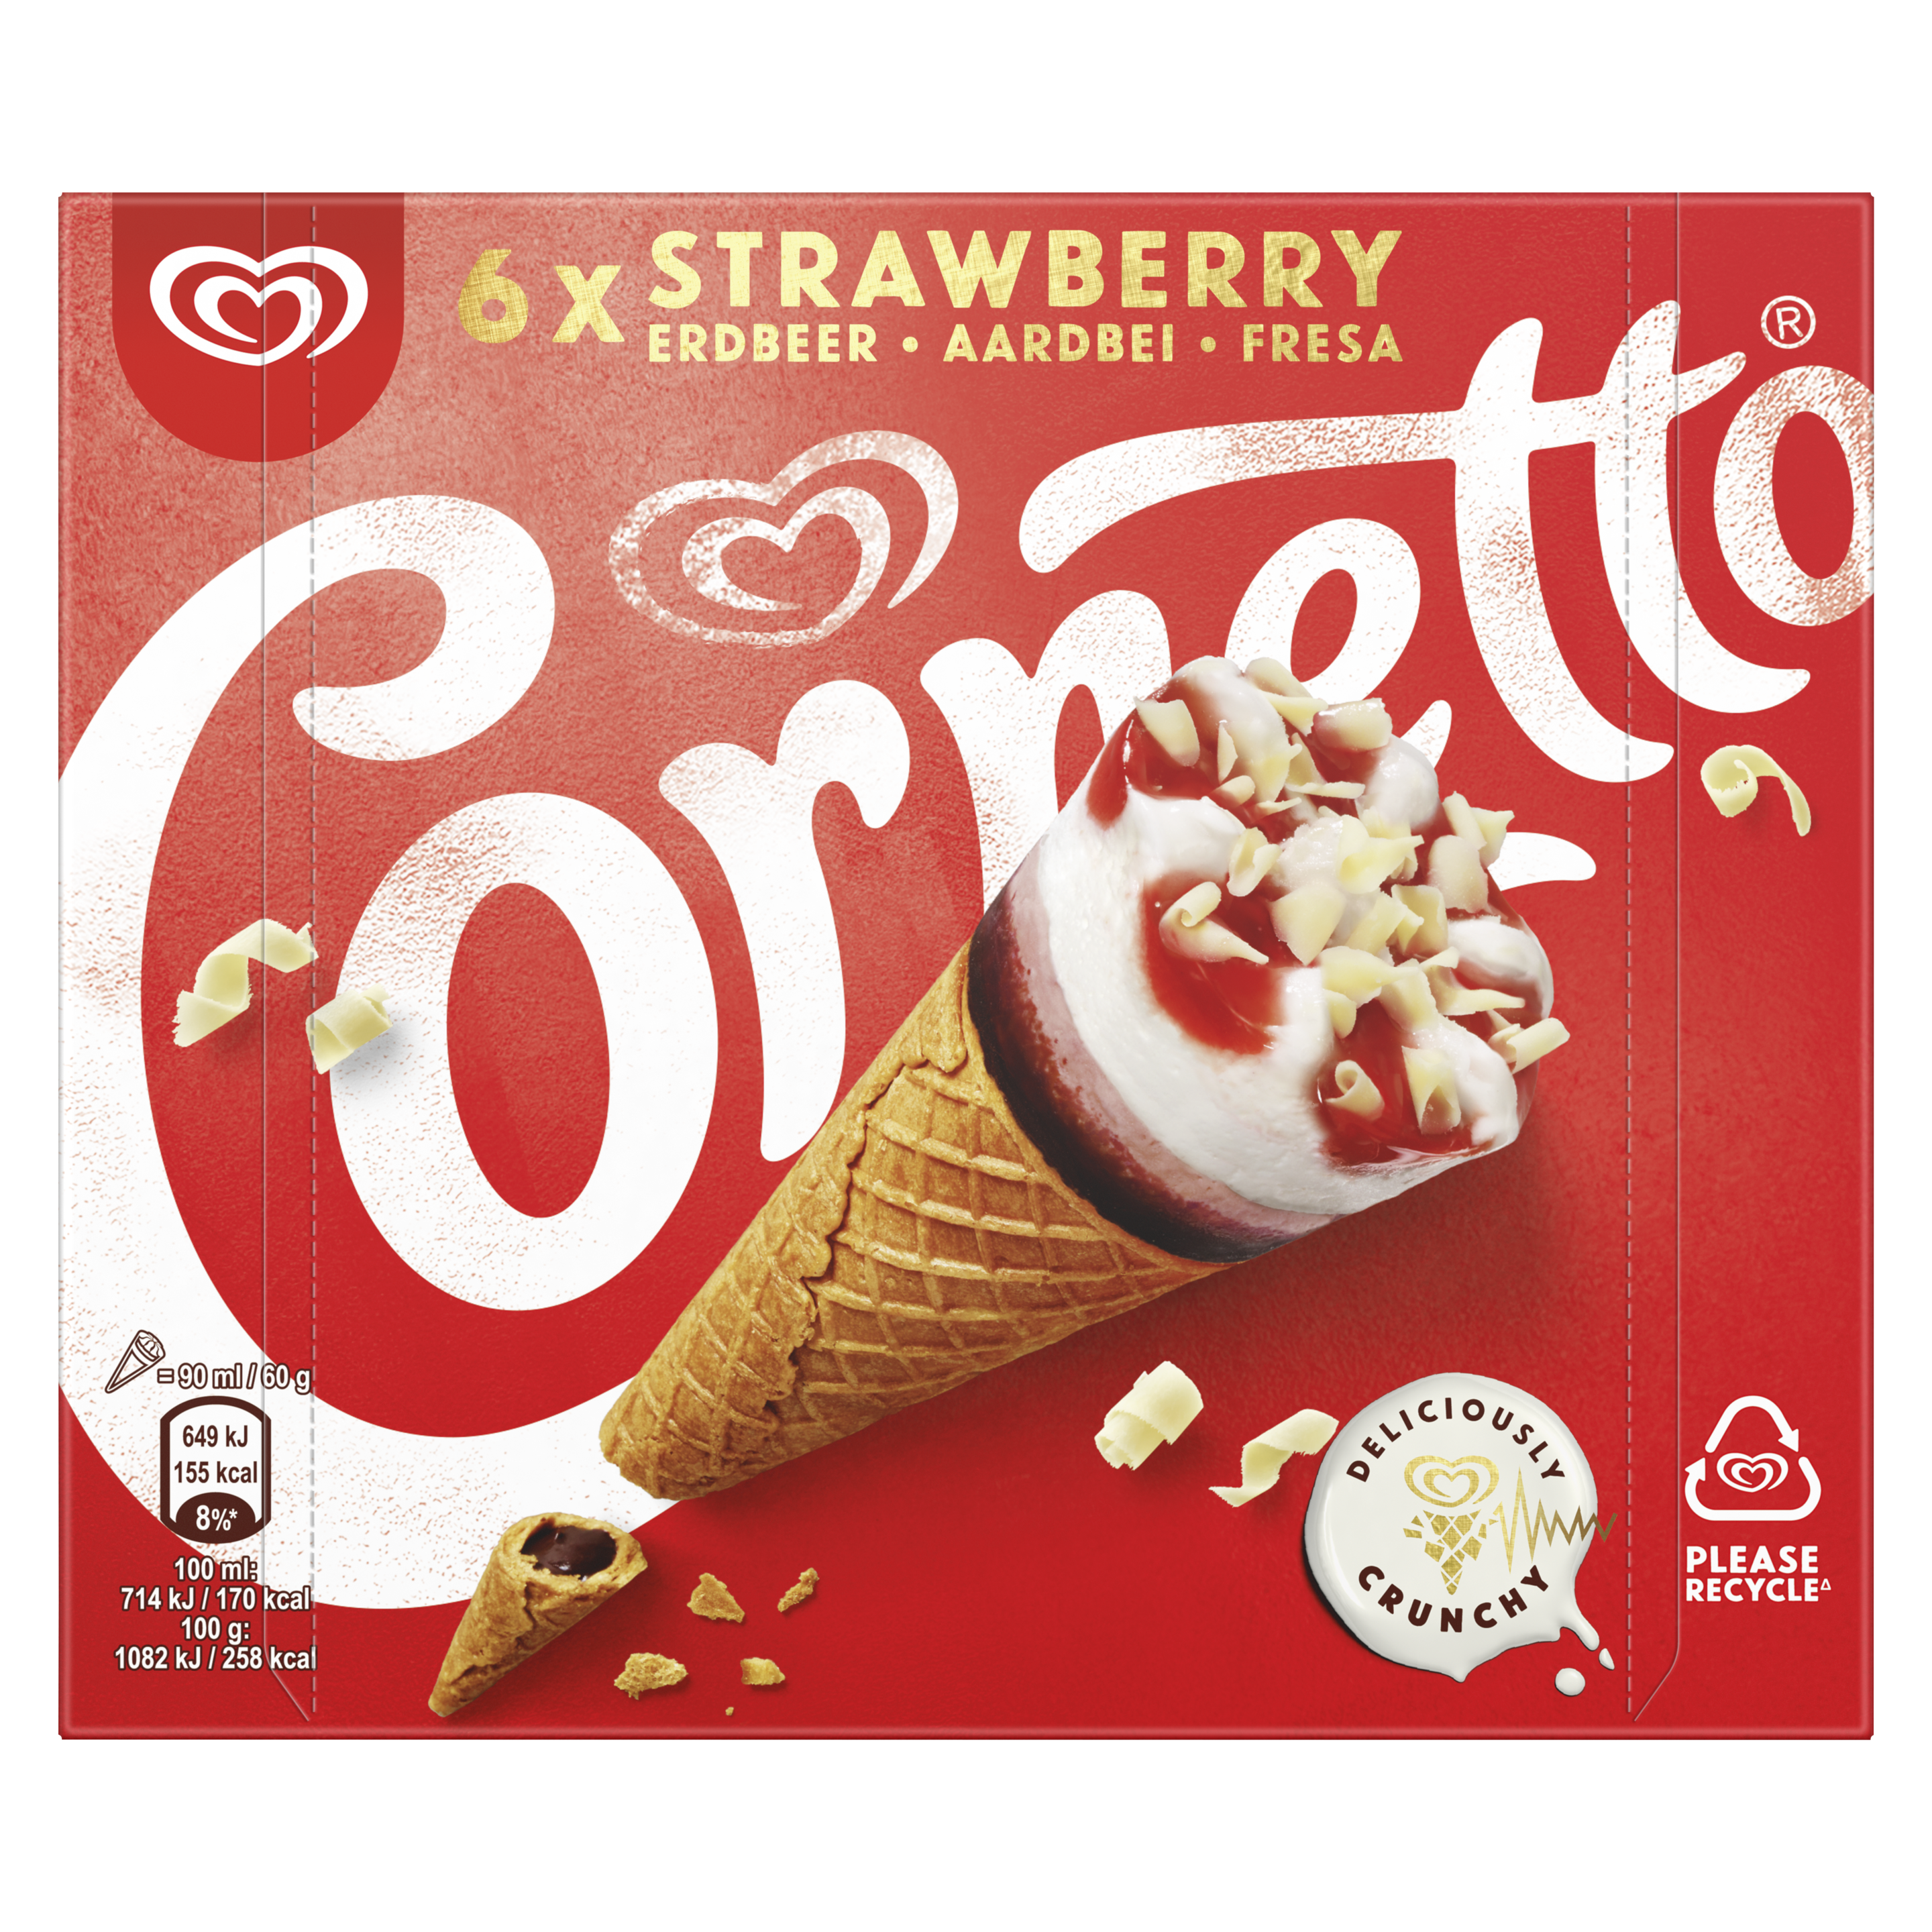 Cornetto Strawberry 6 pack